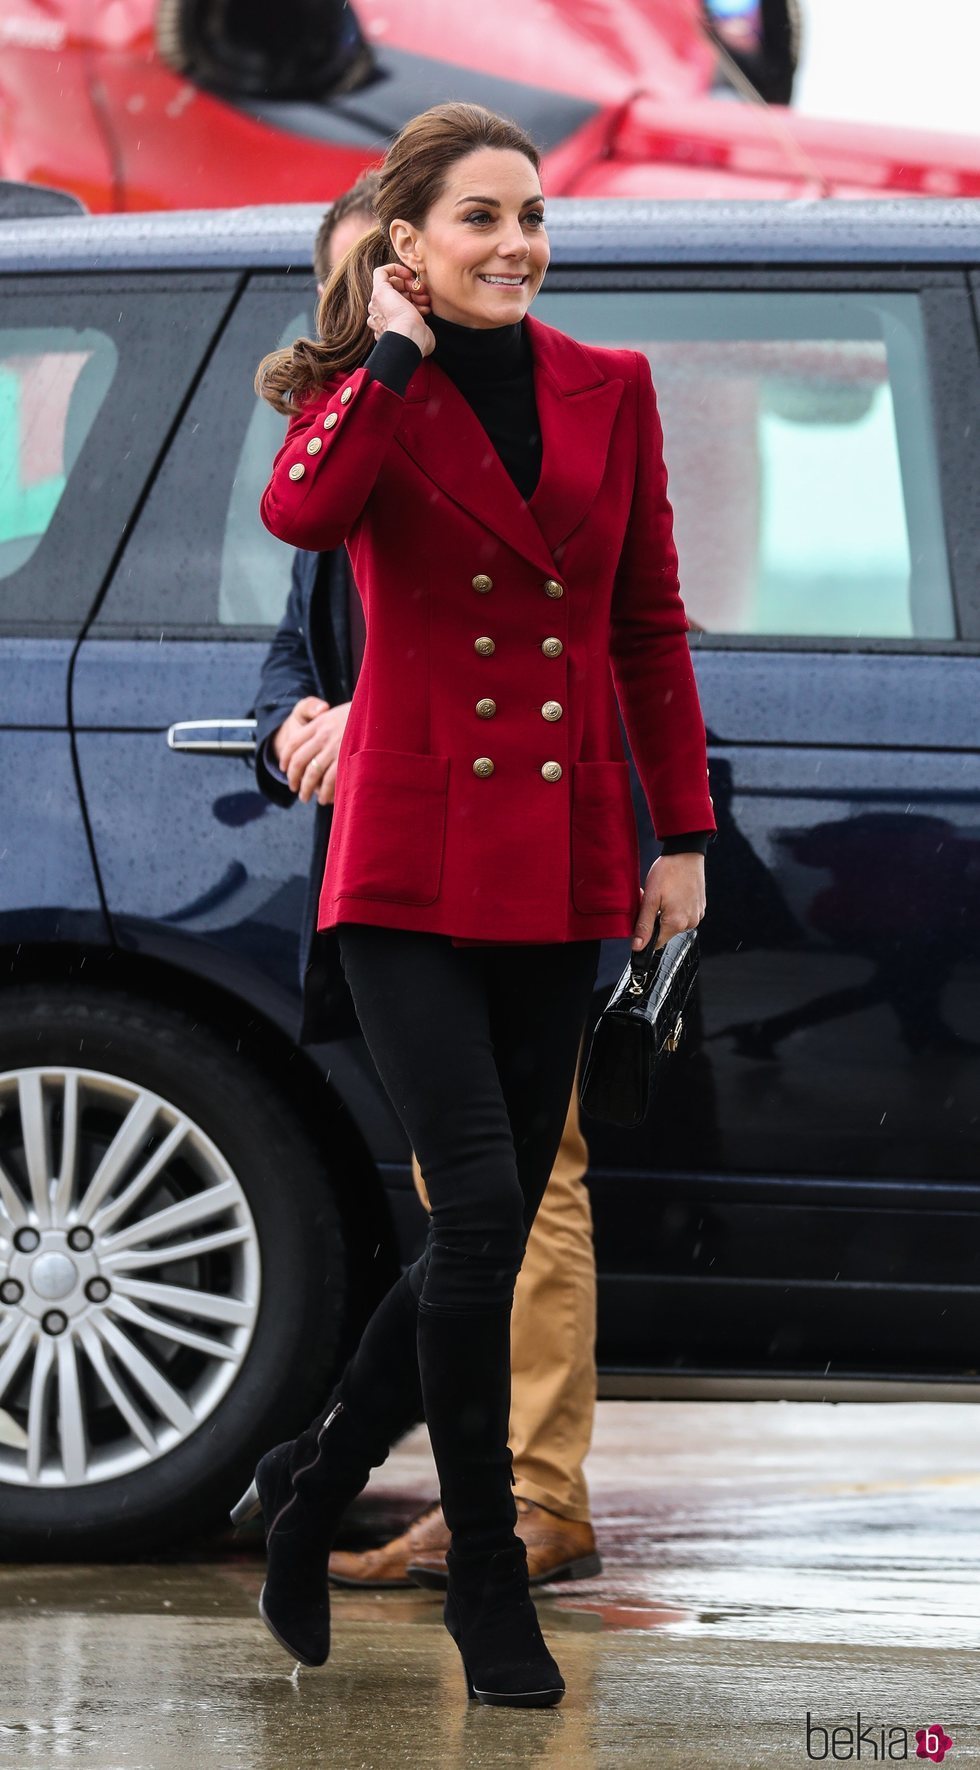 Kate Middleton luce una blazer granate cruzada en su visita a Gales en mayo de 2019